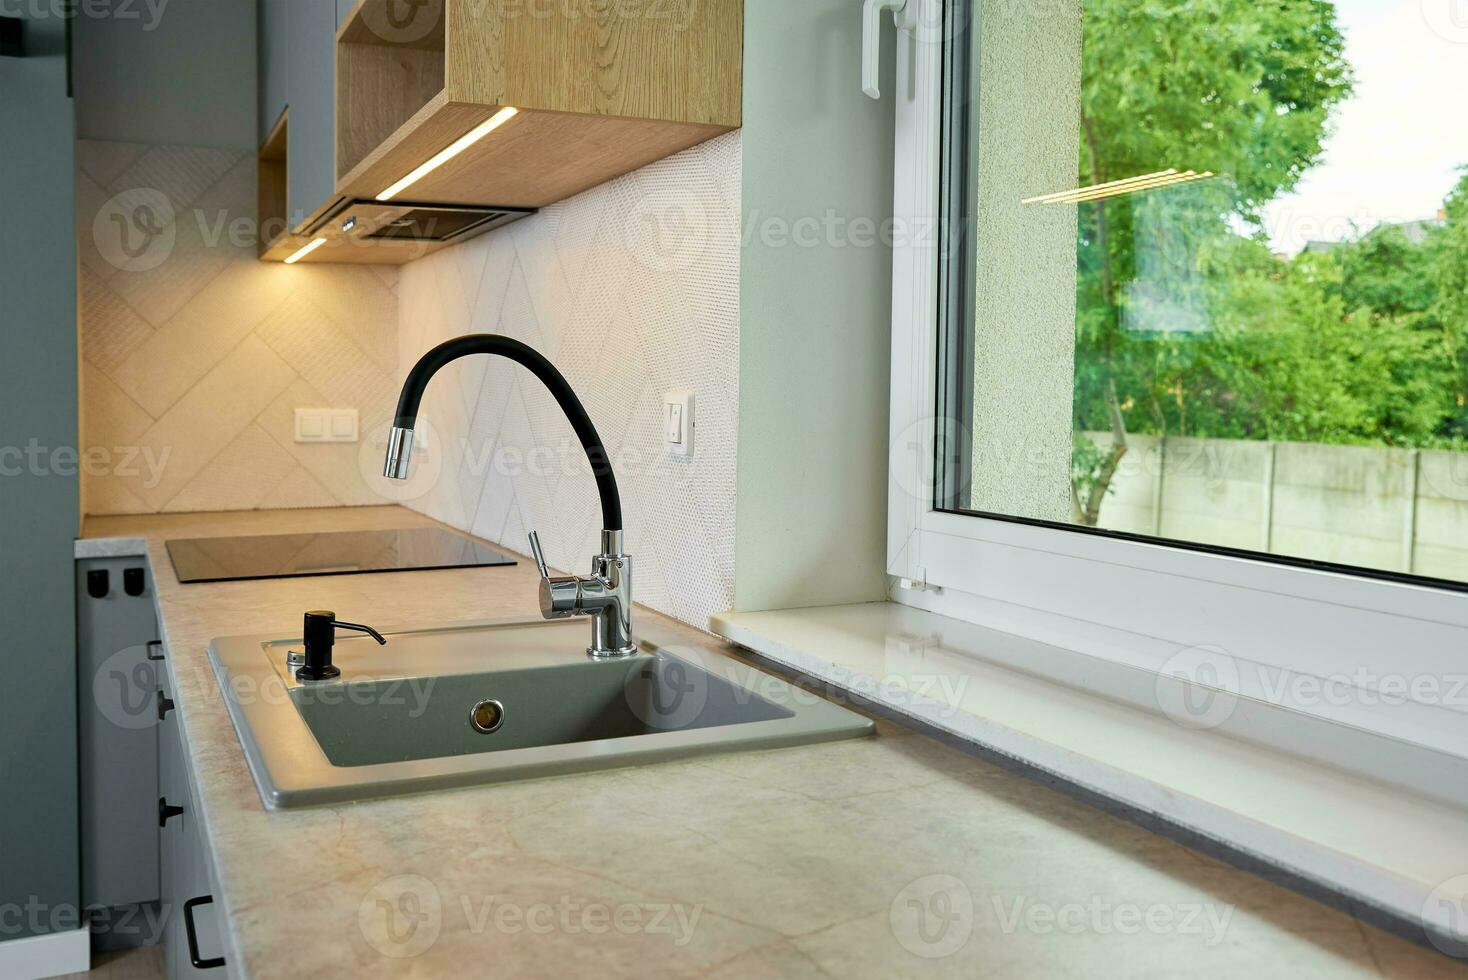 Interior of a modern kitchen with sink near window photo